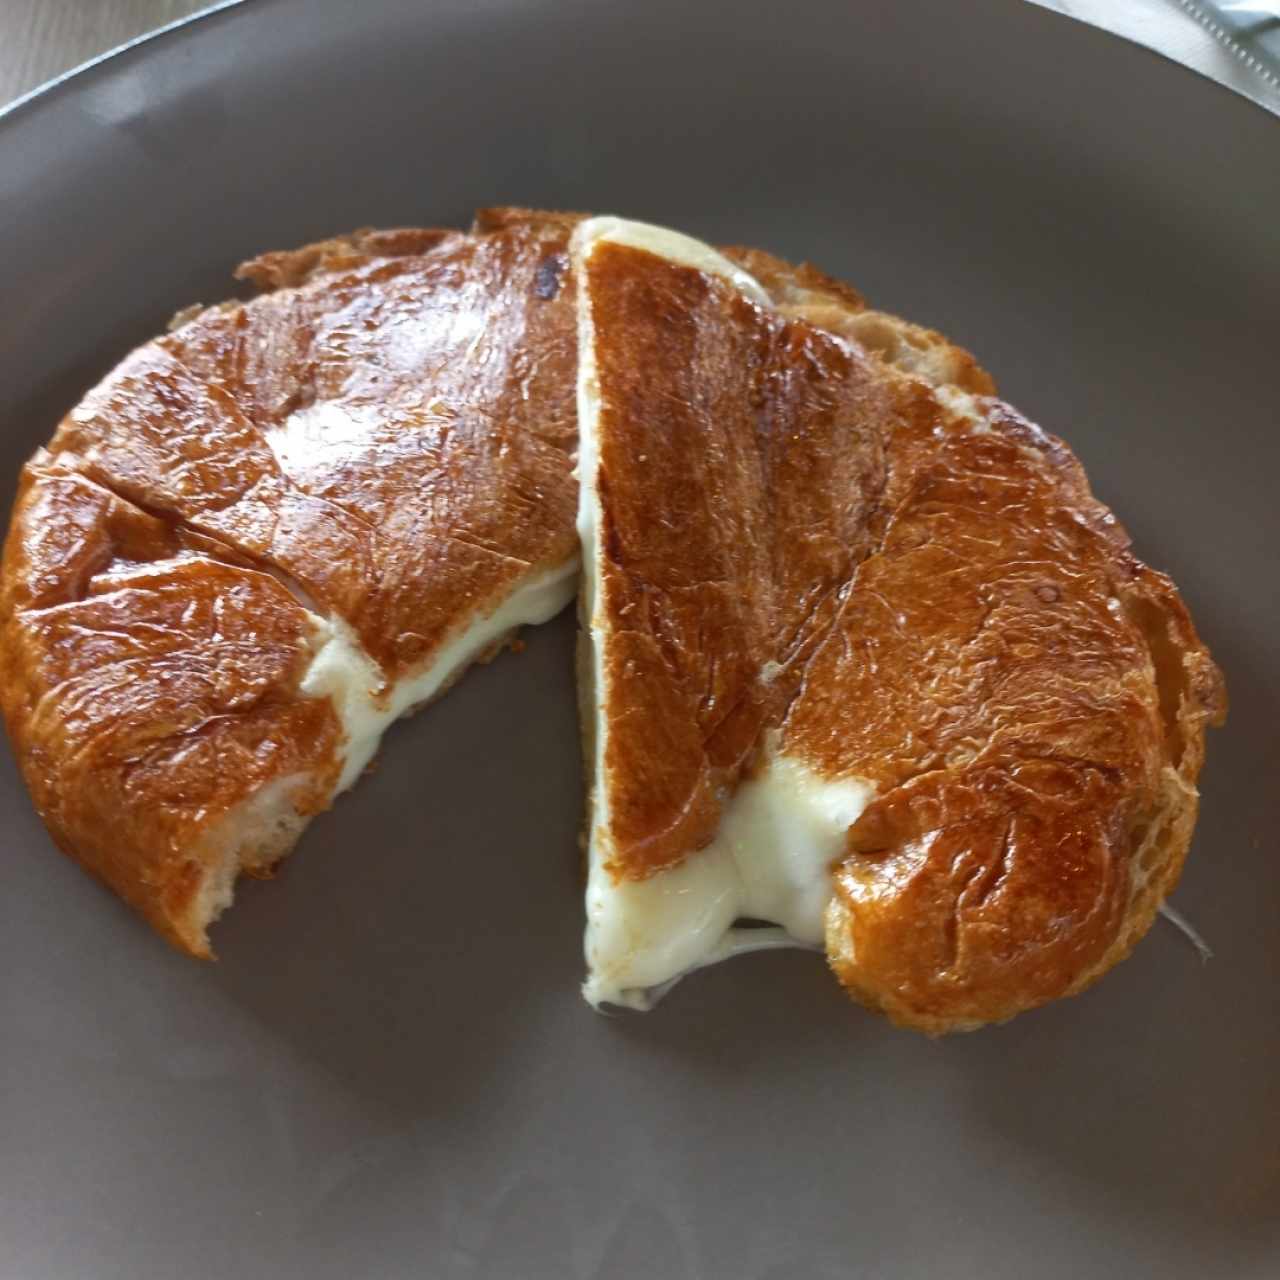 Croissant con queso (Mozzarella,Cheddar o Nacional)